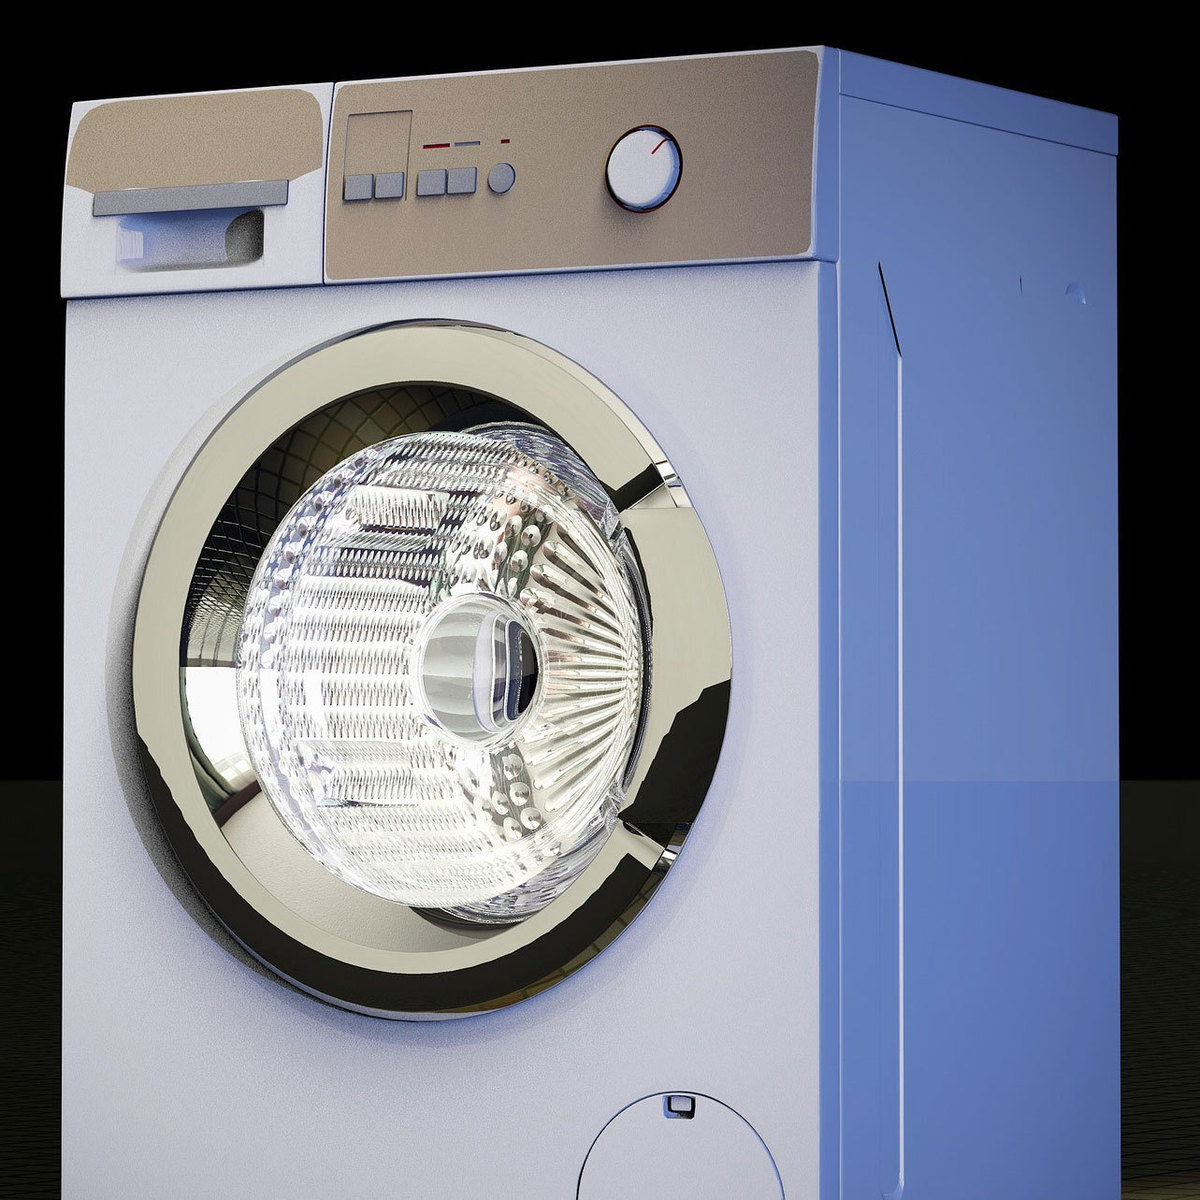 ワイドハイターの洗濯機掃除おすすめのやり方 粉末 液体 分量は タスクル